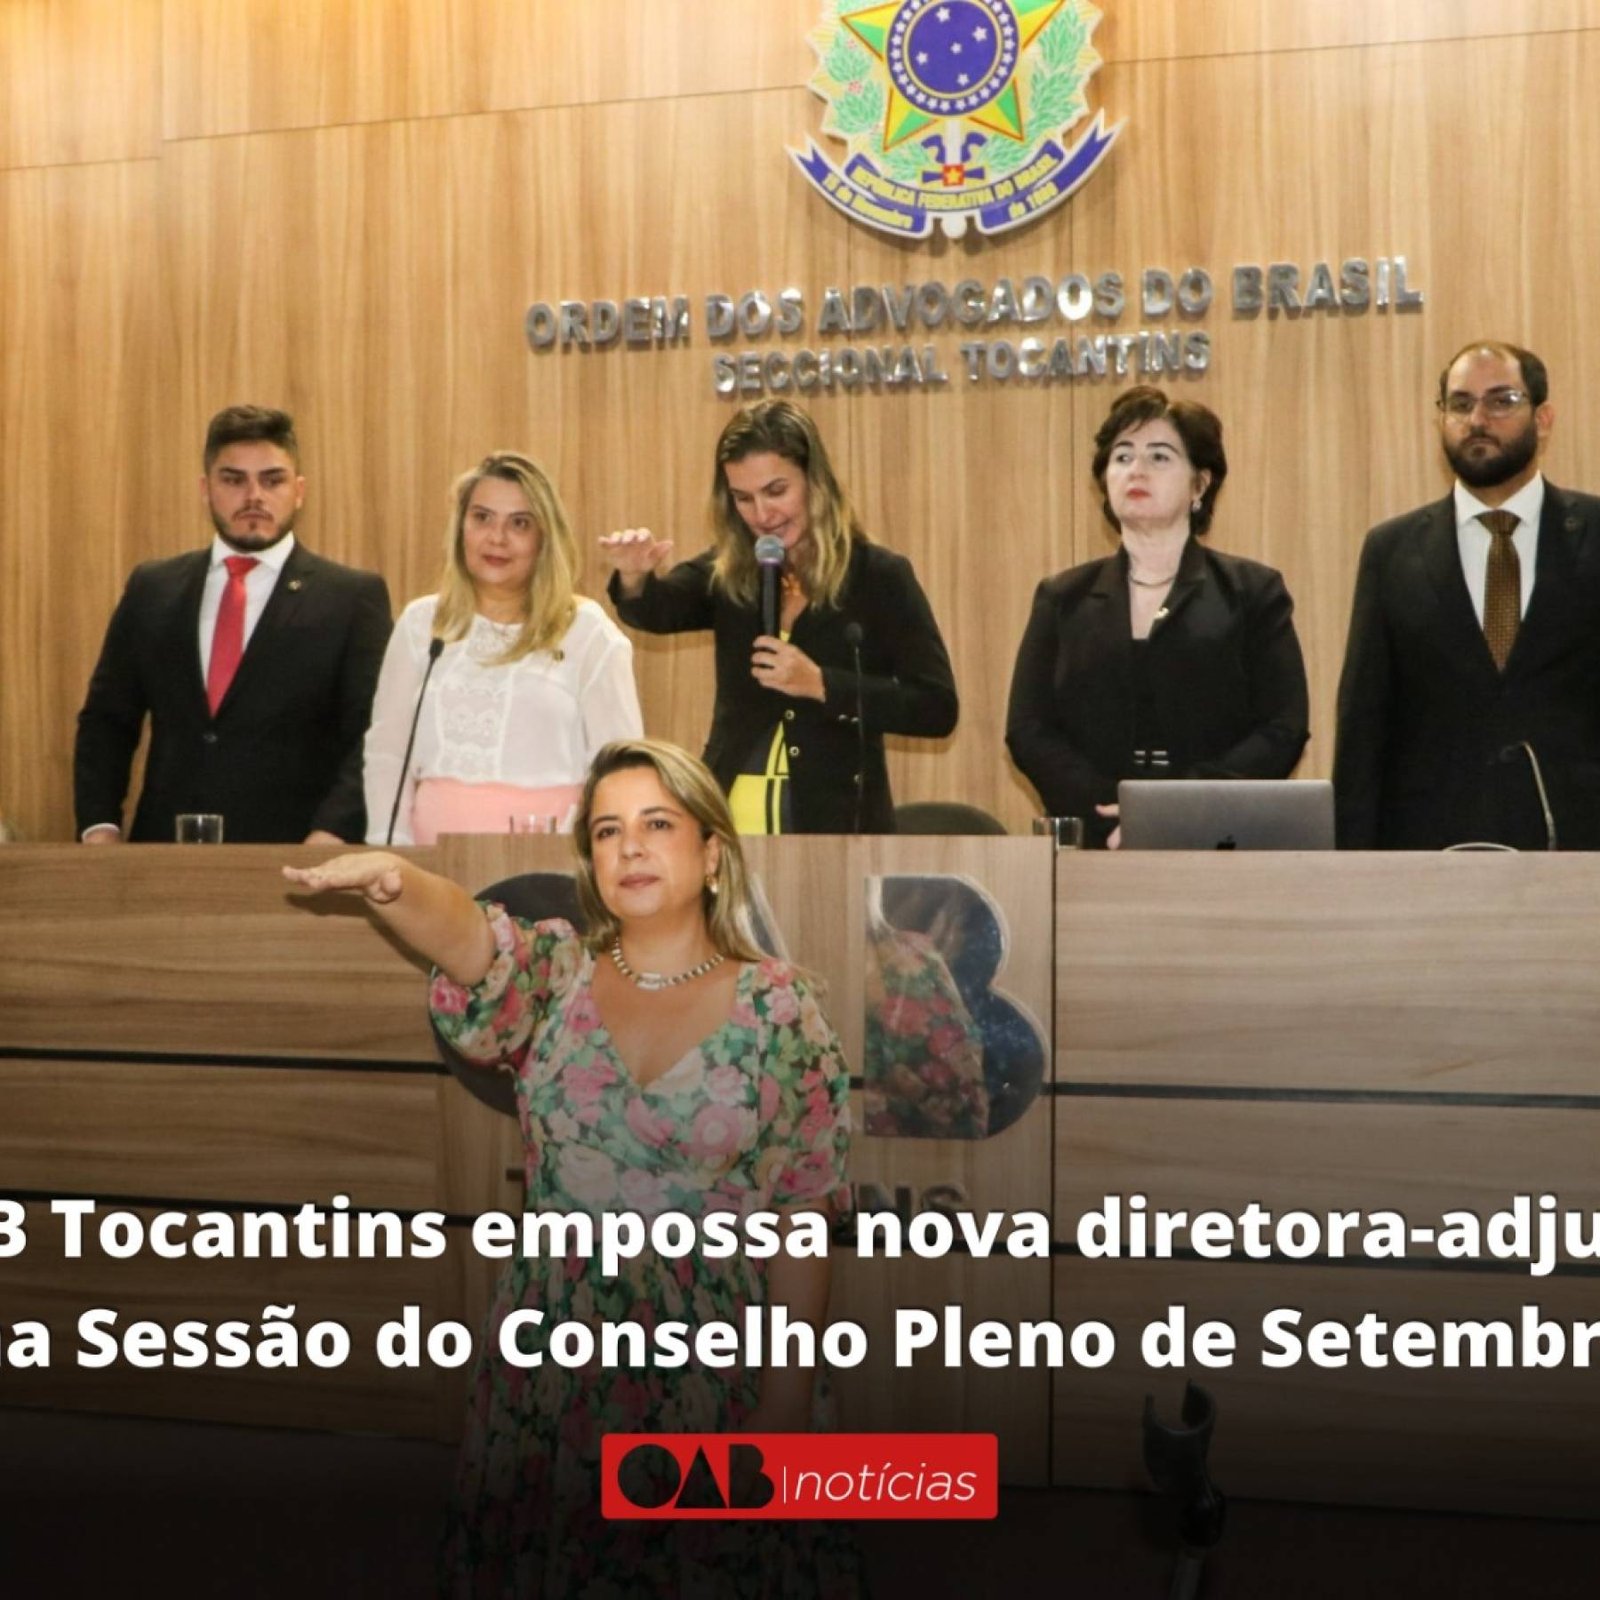 OAB Tocantins empossa nova diretora-adjunta na Sessão do Conselho Pleno de Setembro